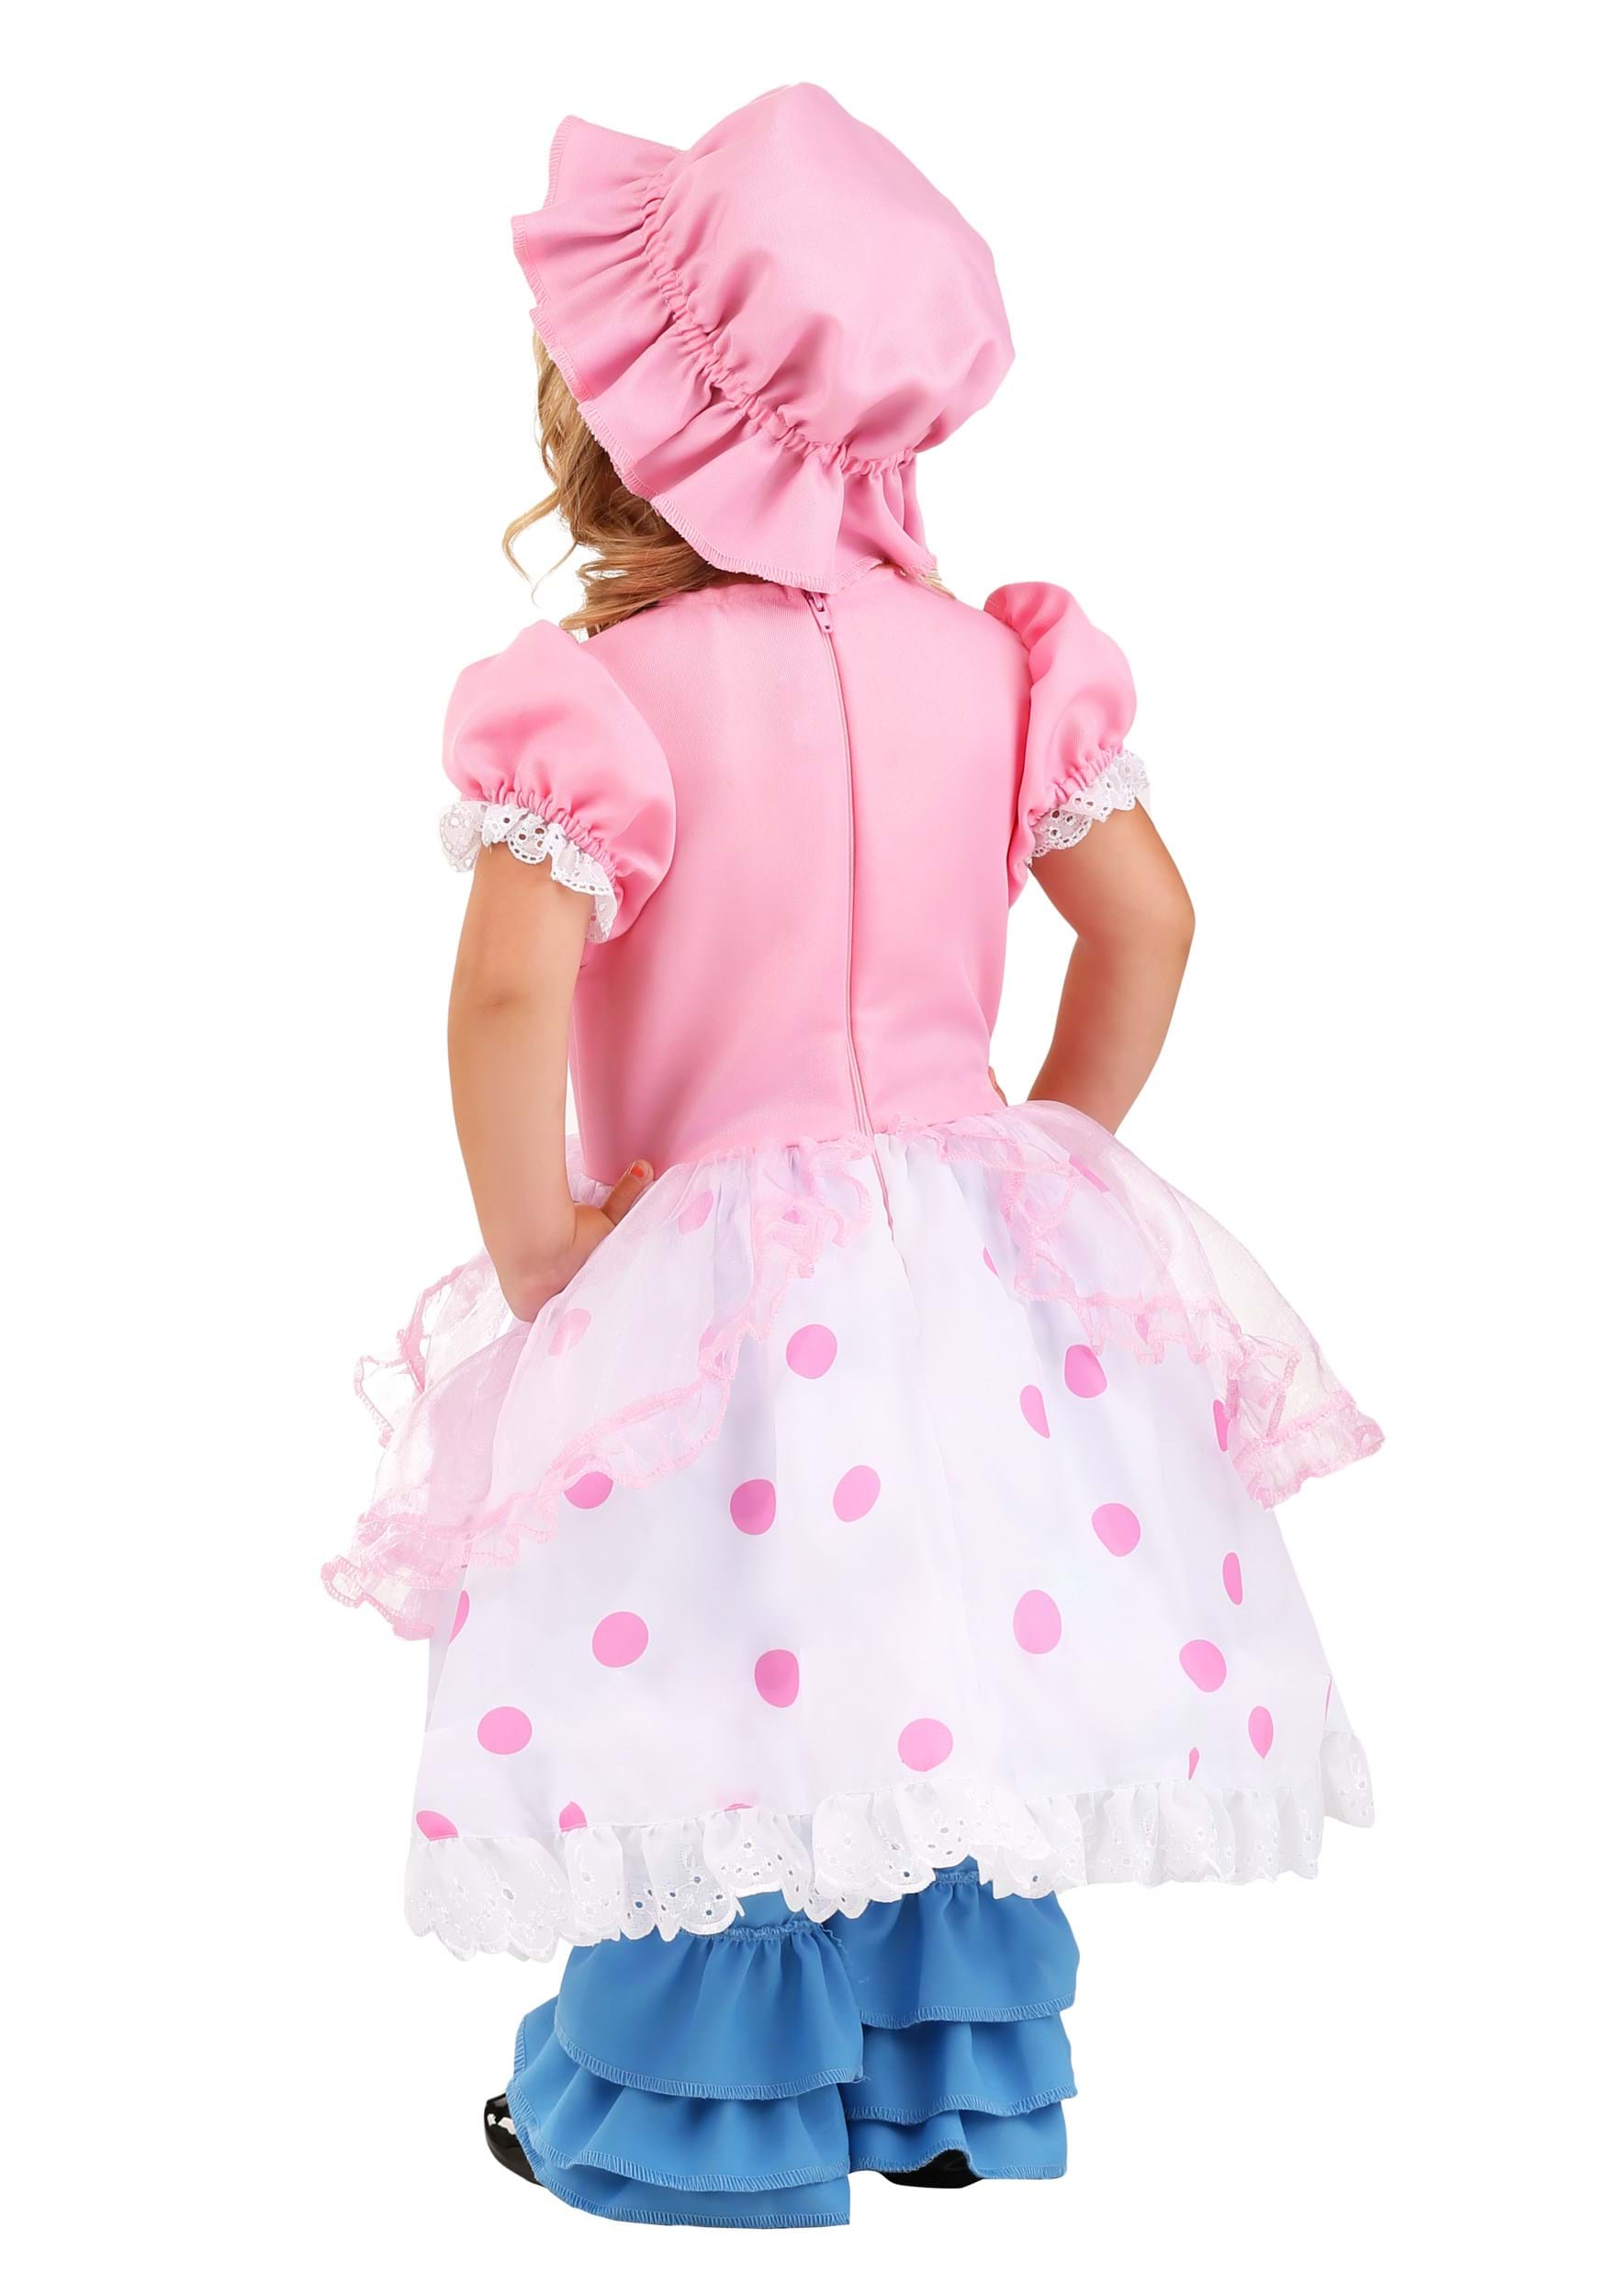 Bo Peep Costume For Toddler's